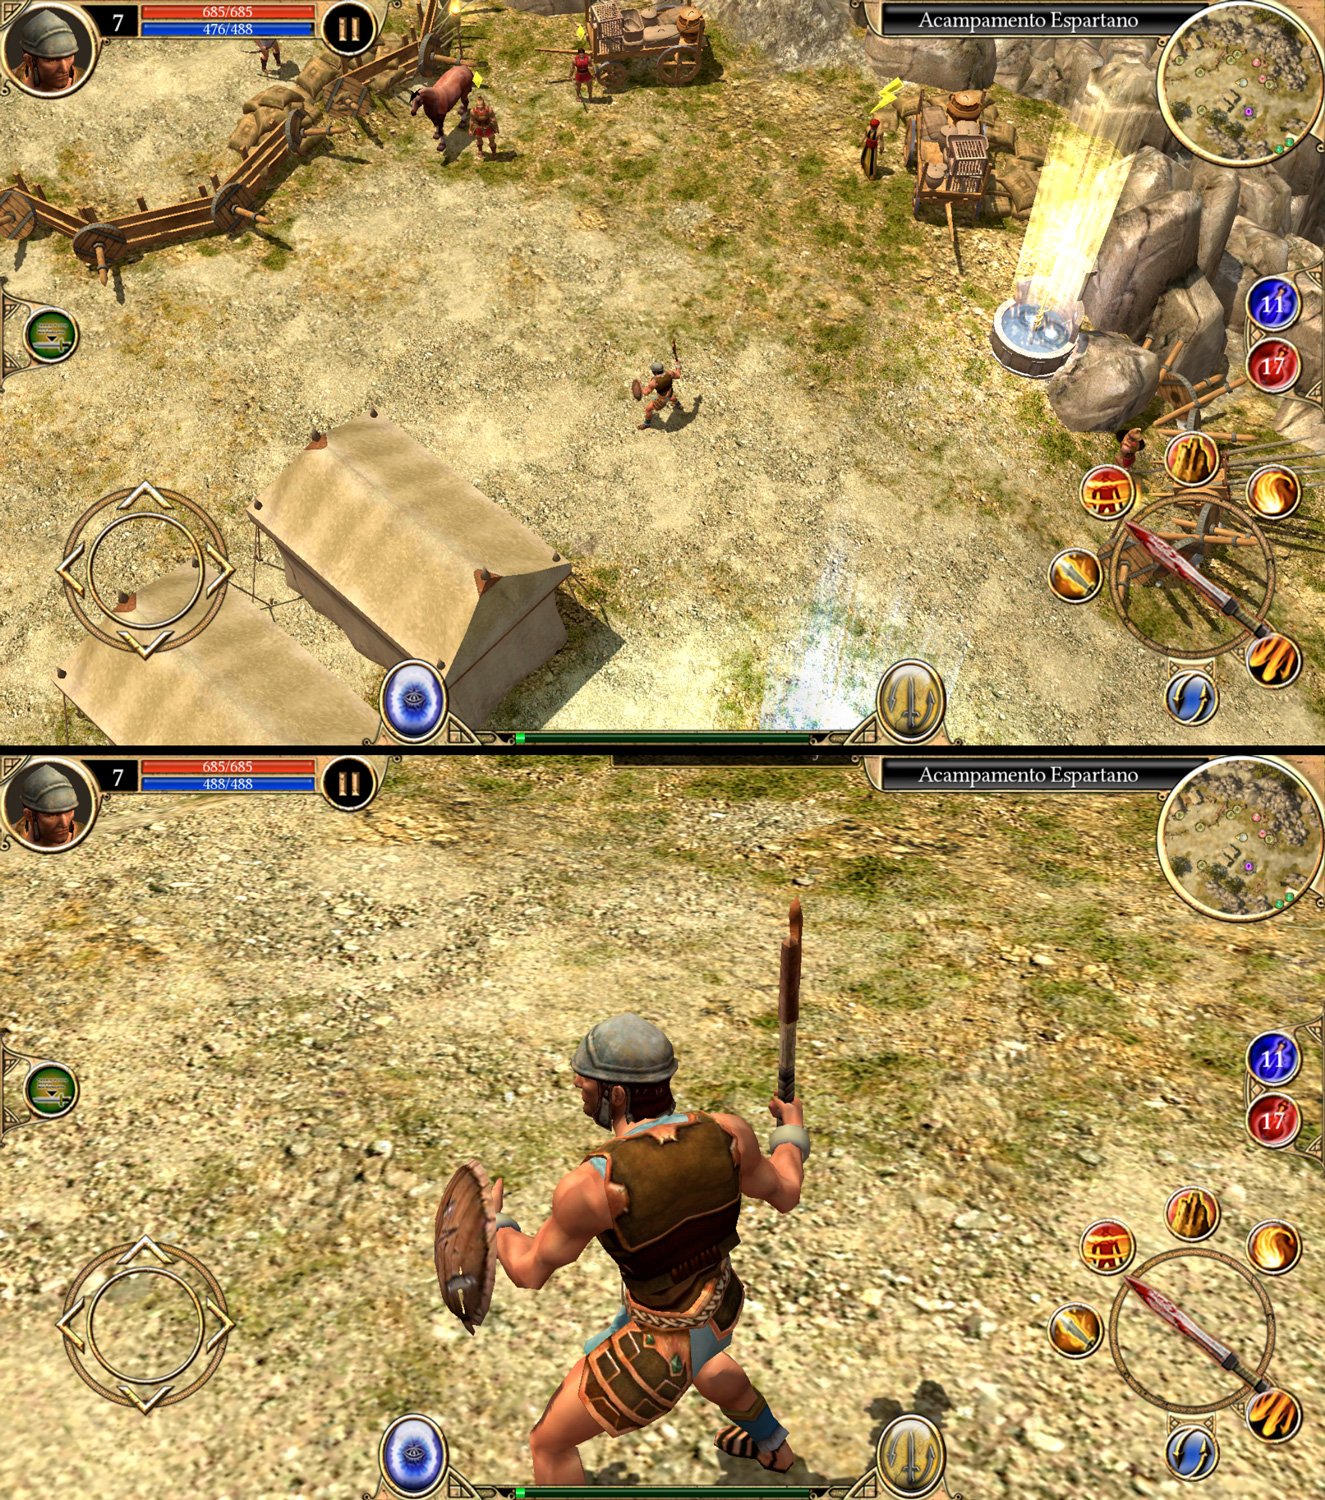 Em Titan Quest Mobile é possível dar zoom para ampliar a câmera ou aproximá-la do seu personagem